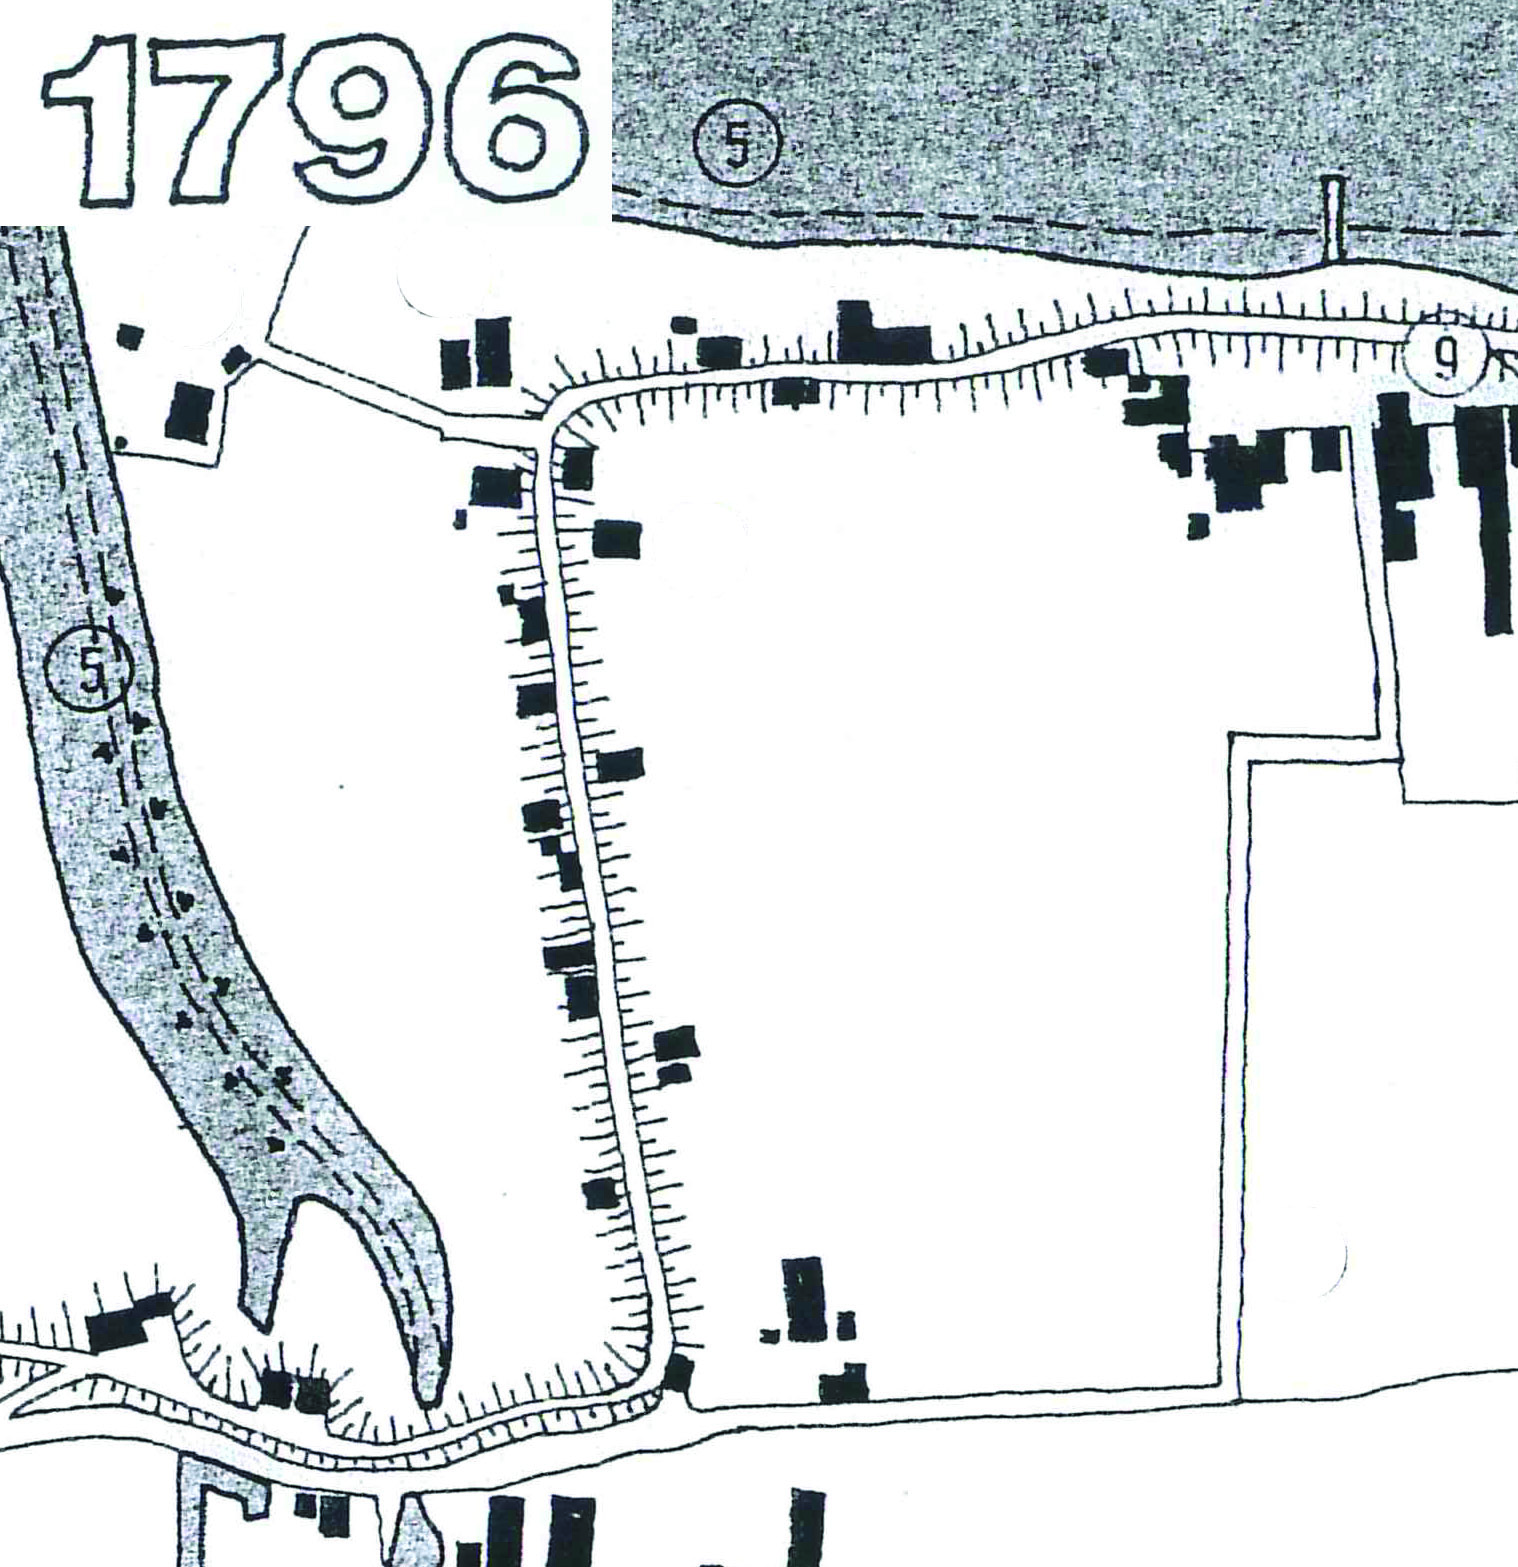 Siedlungsentwicklung Brake 1796